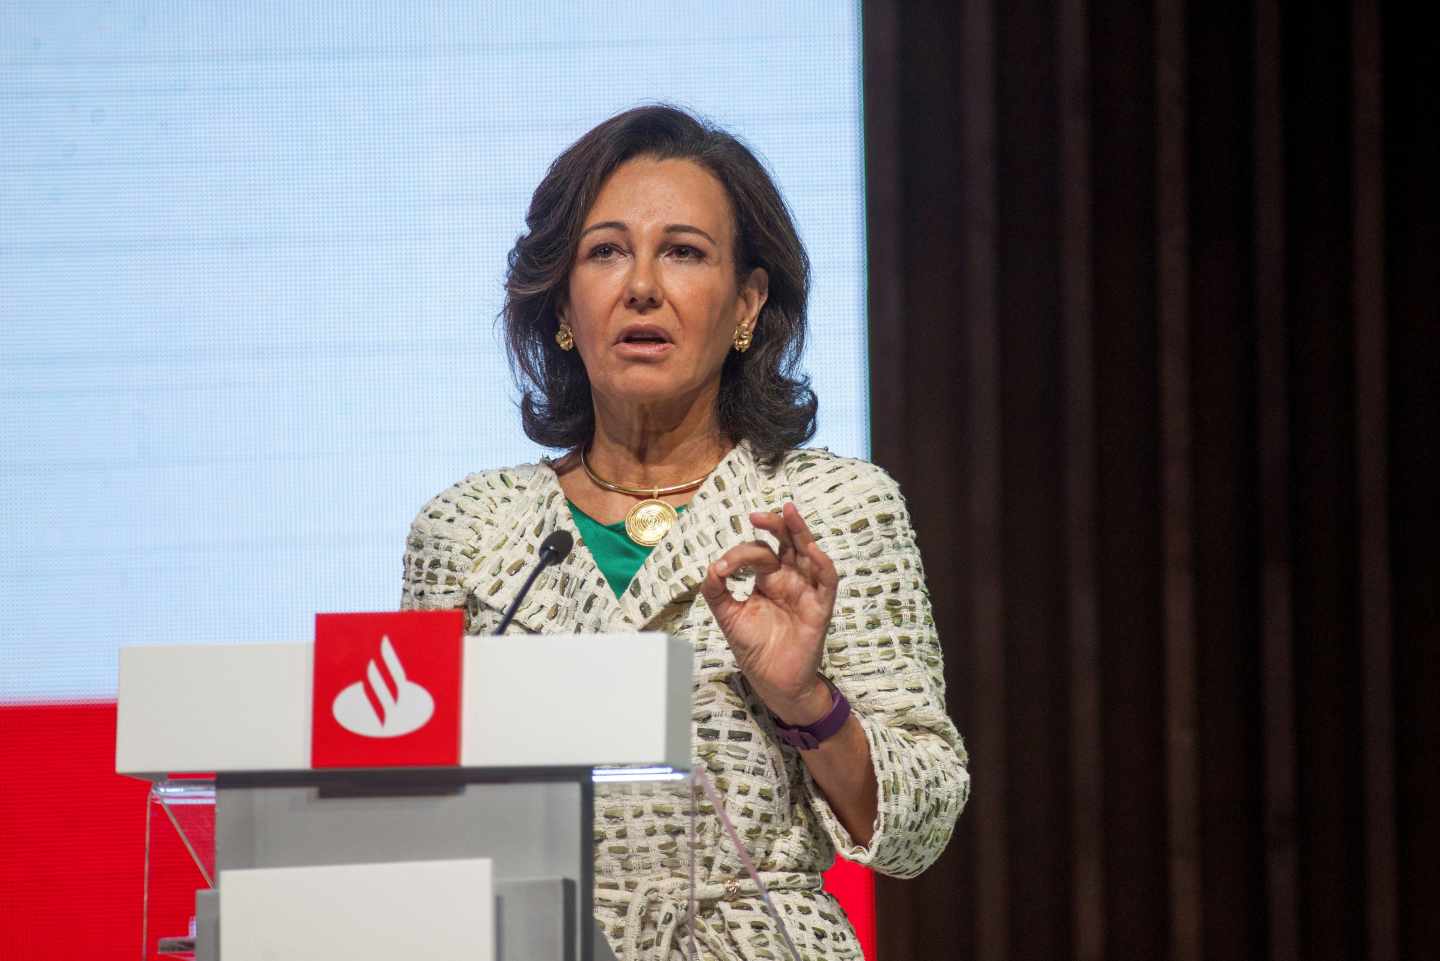 La presidenta de Santander, Ana Botín.